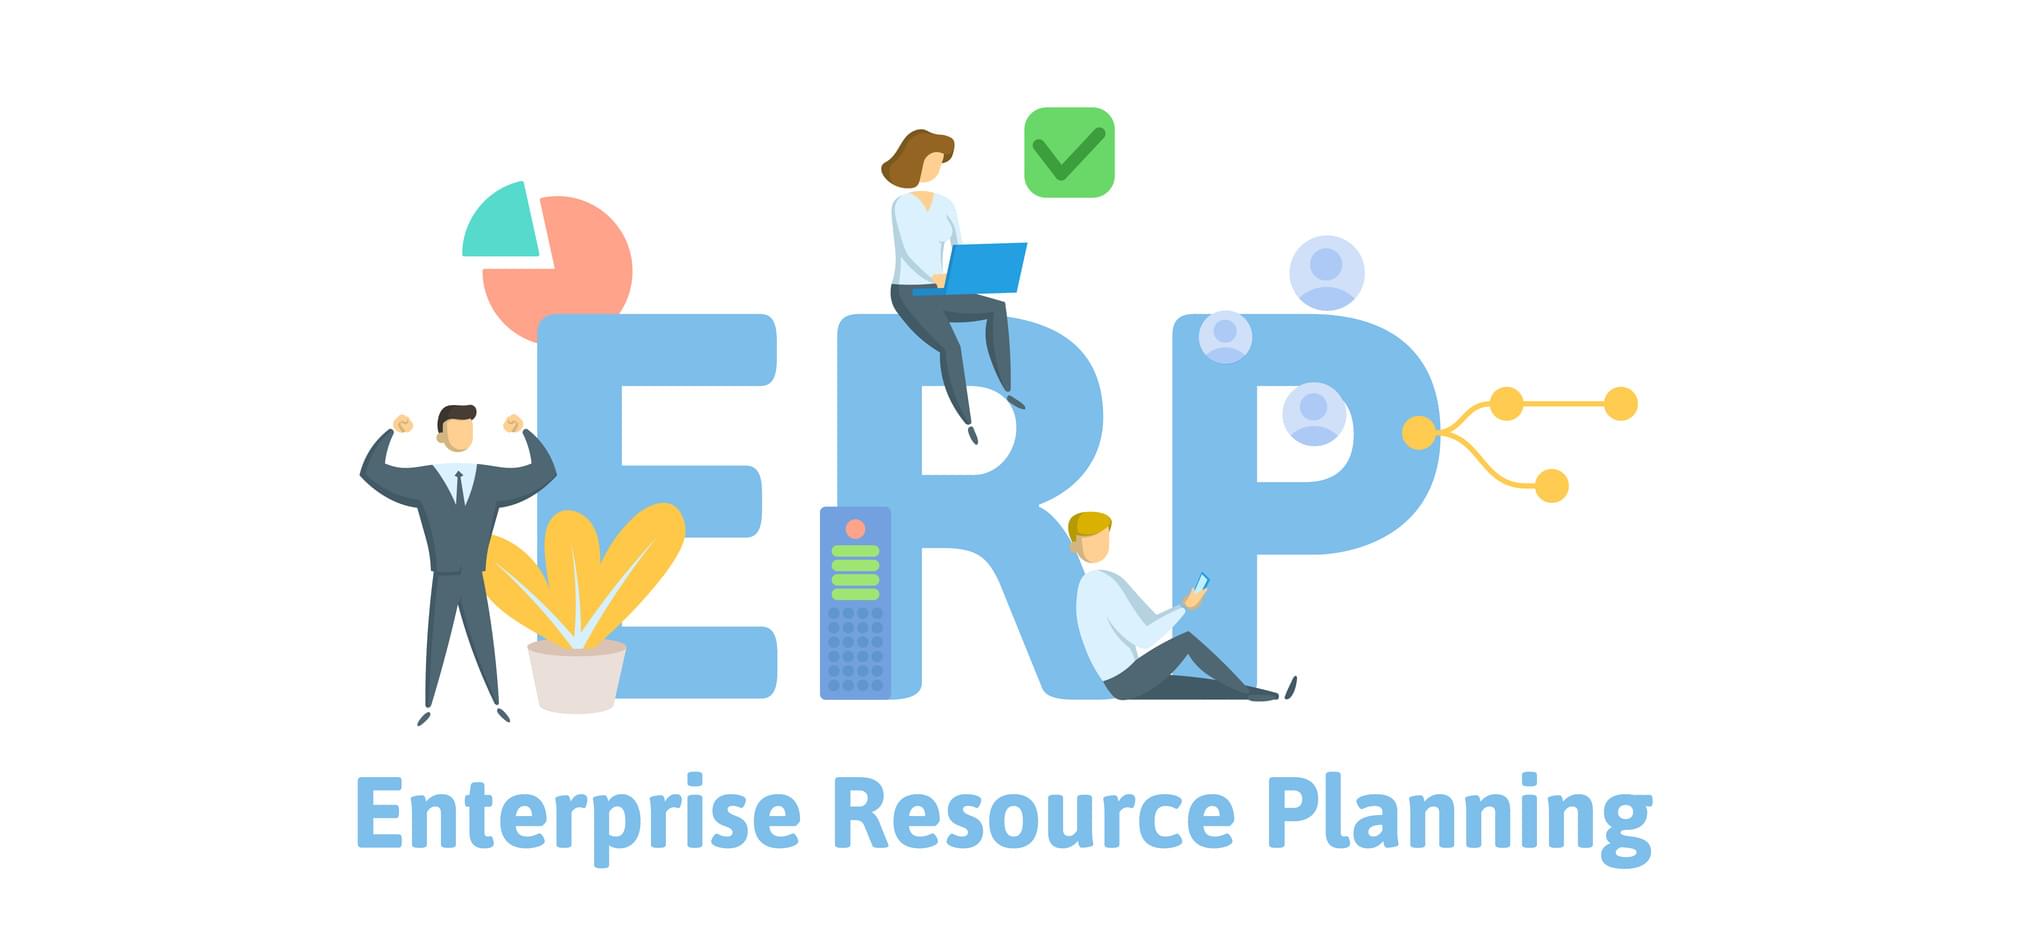 Phần mềm ERP phù hợp với doanh nghiệp như thế nào?